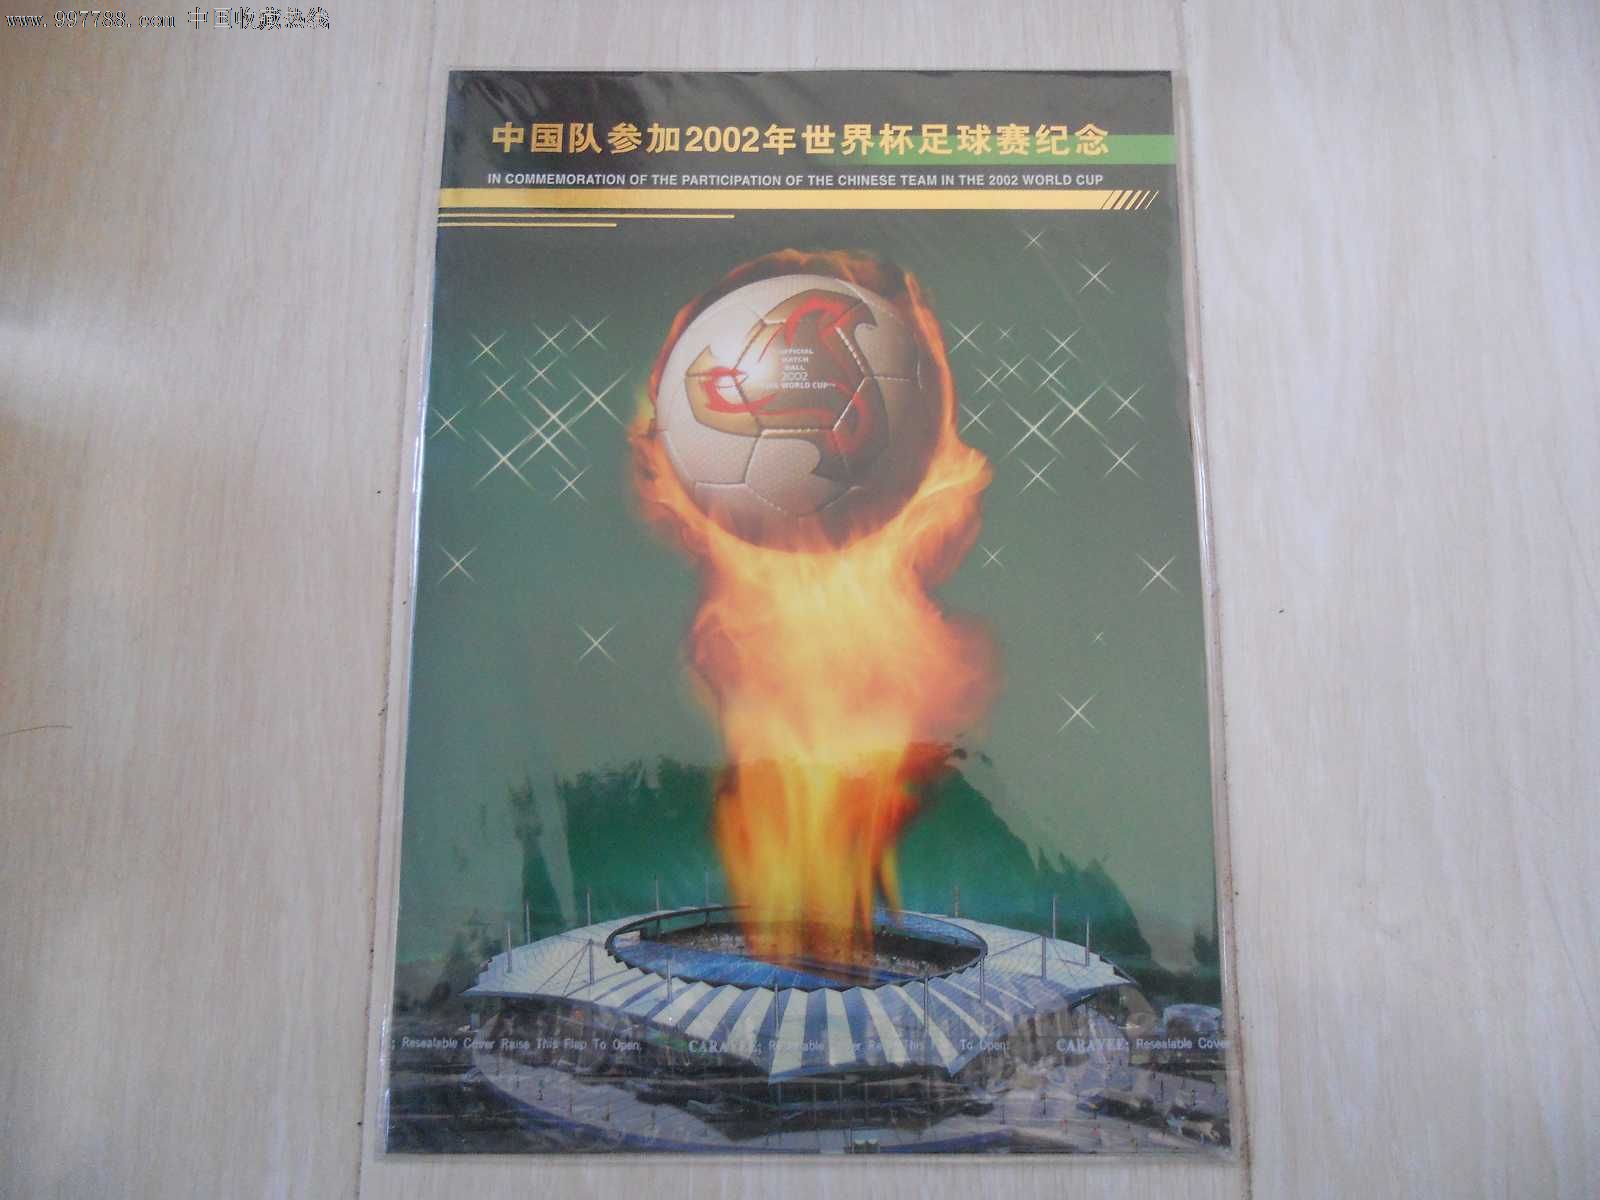 2002年世界杯足球赛小版票(纪念邮折)-价格:80